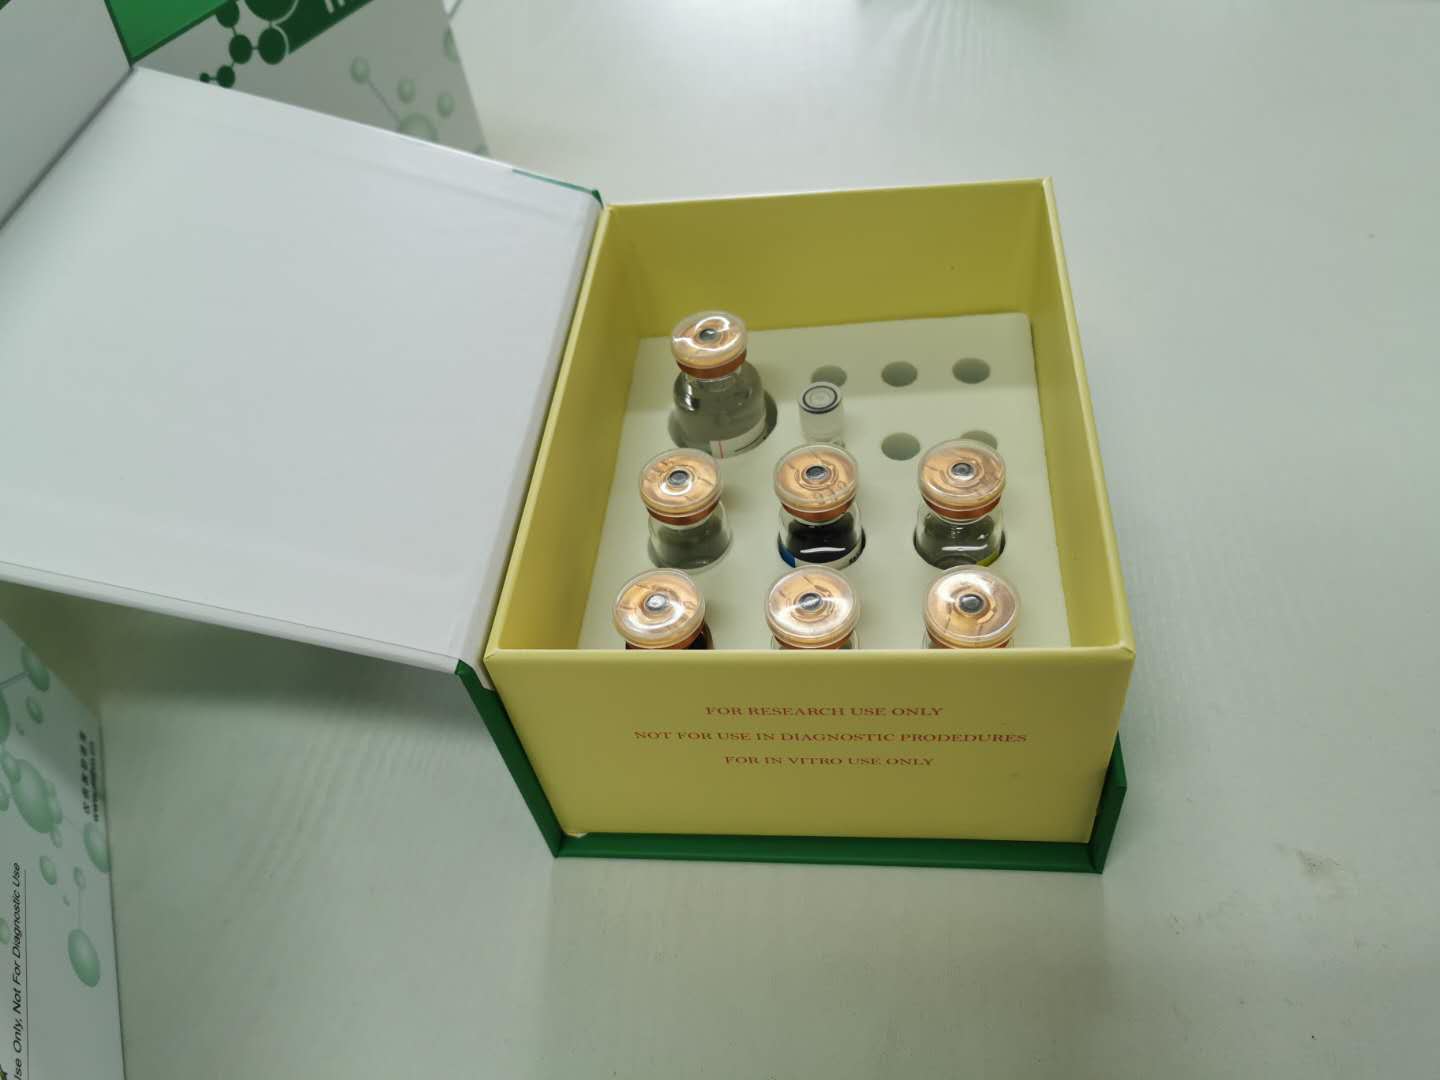 4CL 试剂盒仅供实验室科研